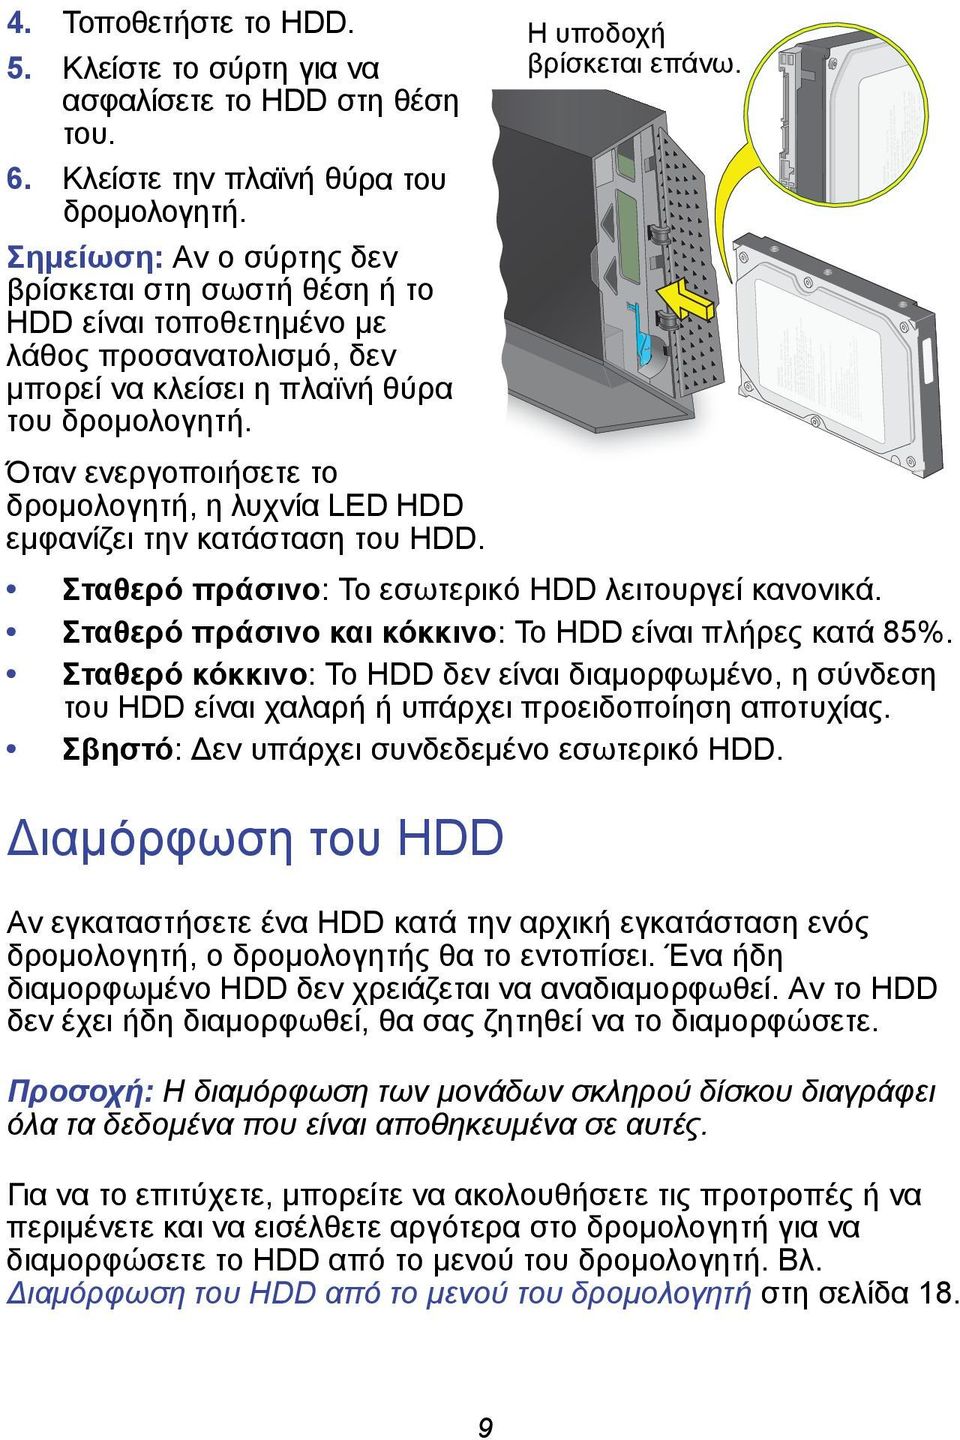 Όταν ενεργοποιήσετε το δρομολογητή, η λυχνία LED HDD εμφανίζει την κατάσταση του HDD. Σταθερό πράσινο: Το εσωτερικό HDD λειτουργεί κανονικά. Σταθερό πράσινο και κόκκινο: Το HDD είναι πλήρες κατά 85%.